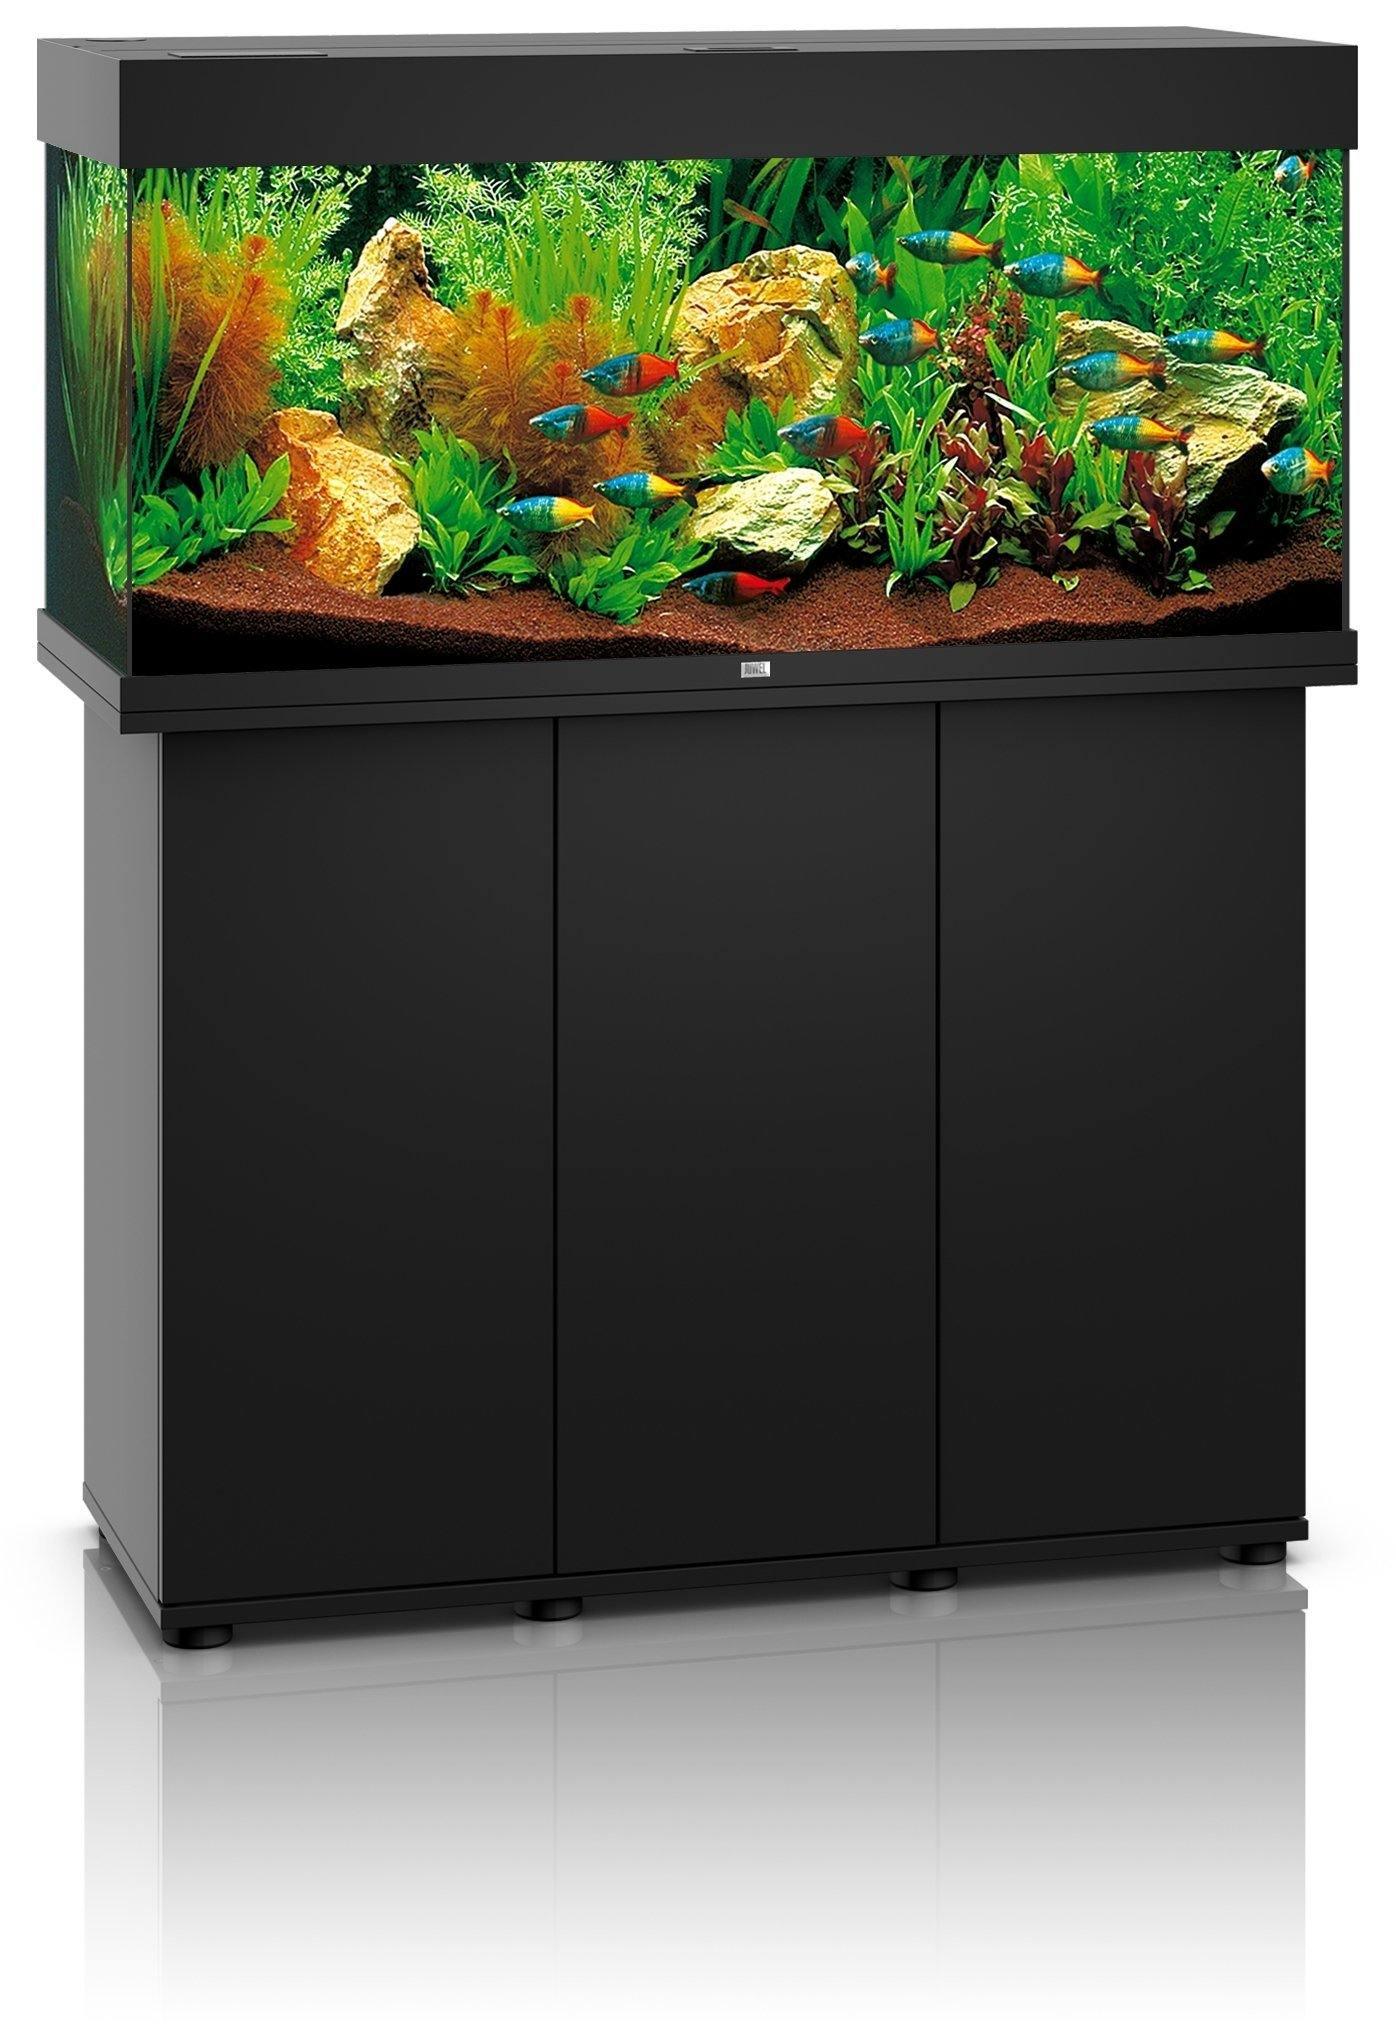 Juwel Rio 350 LED Aquarium and Cabinet - Amazing Amazon